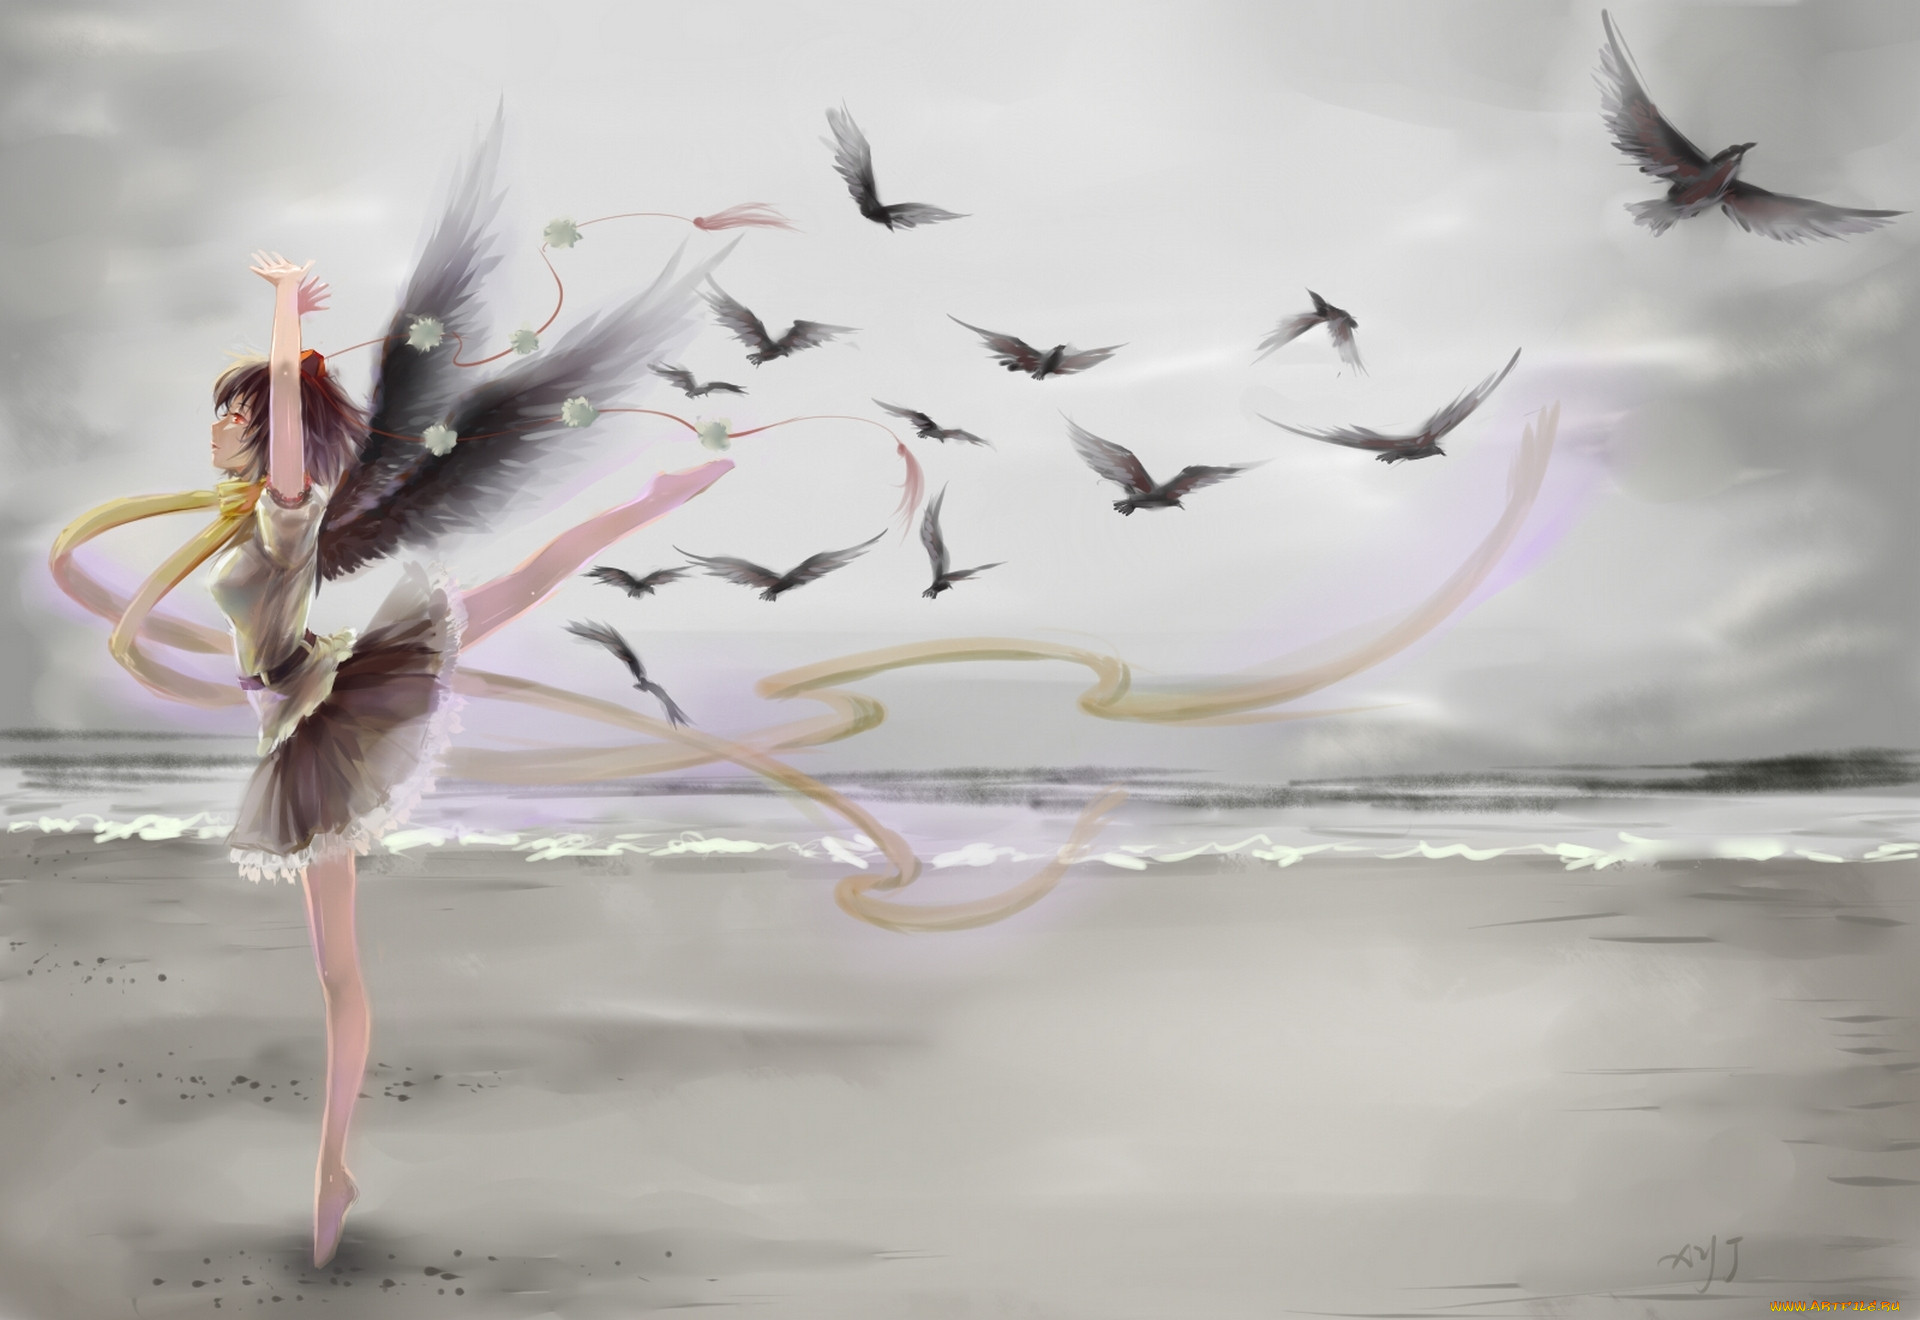 Красивая песня улетели. Девушка птица. Девушка с птичкой. Картина девушка с крыльями. Девушка и летящие птицы арт.